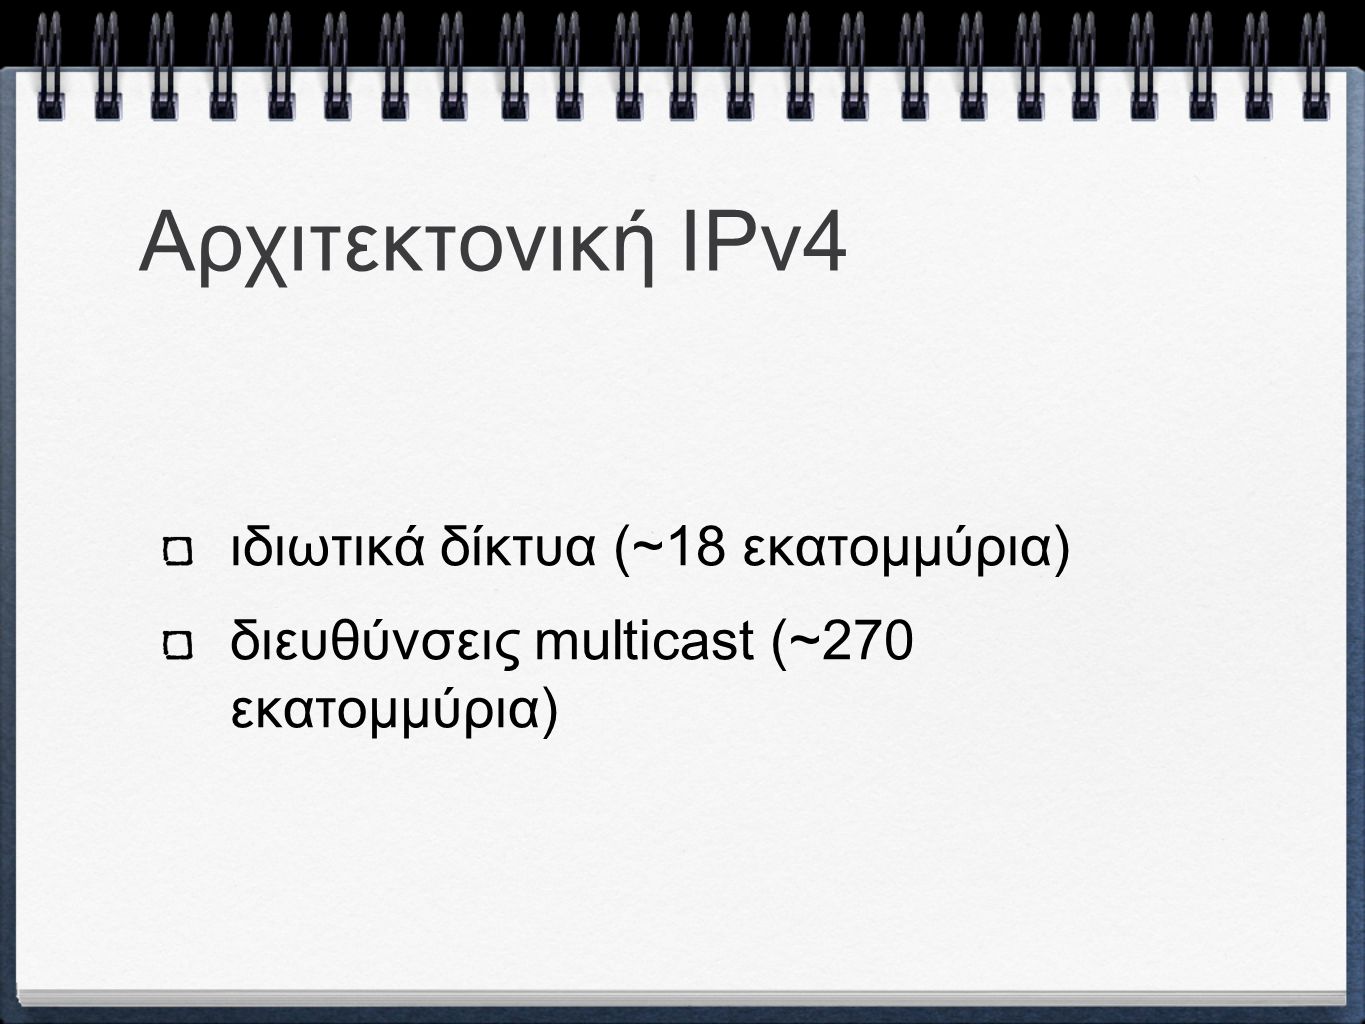 Αρχιτεκτονική ΙPv4 ιδιωτικά δίκτυα (~18 εκατομμύρια) διευθύνσεις multicast (~270 εκατομμύρια)